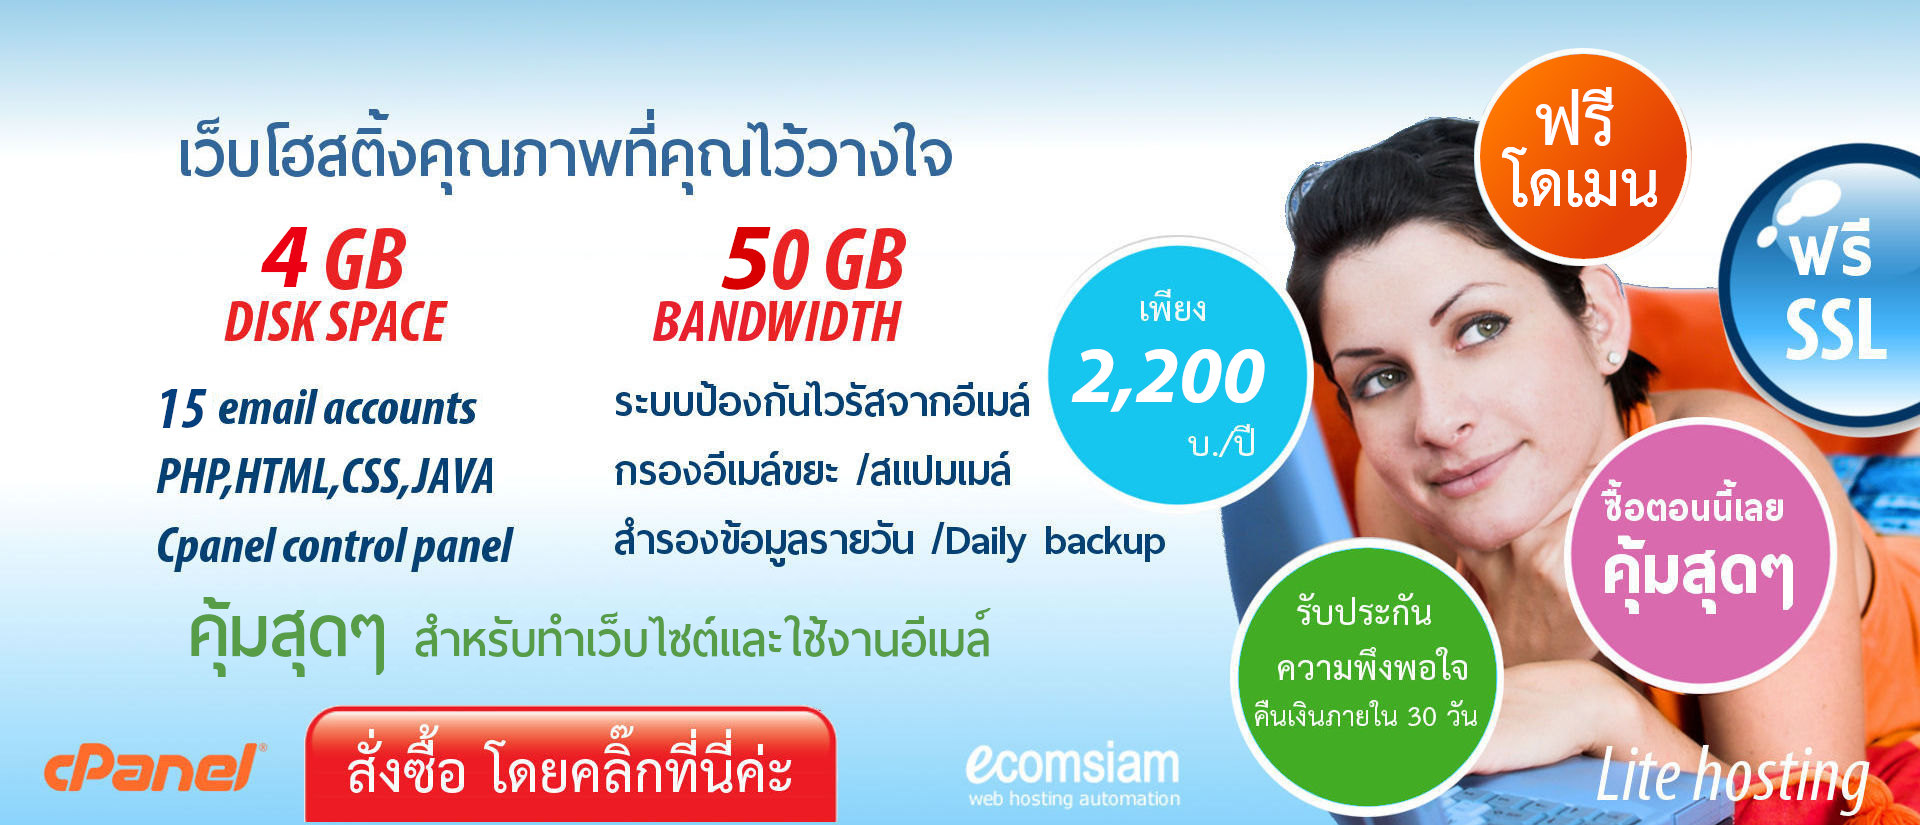 ฟรีโดเมน สำหรับ web hosting thailand -liteplan เว็บโฮสติ้งไทย ราคาเบาๆ ฟรี SSL เพียง 2200 บาทต่อปี